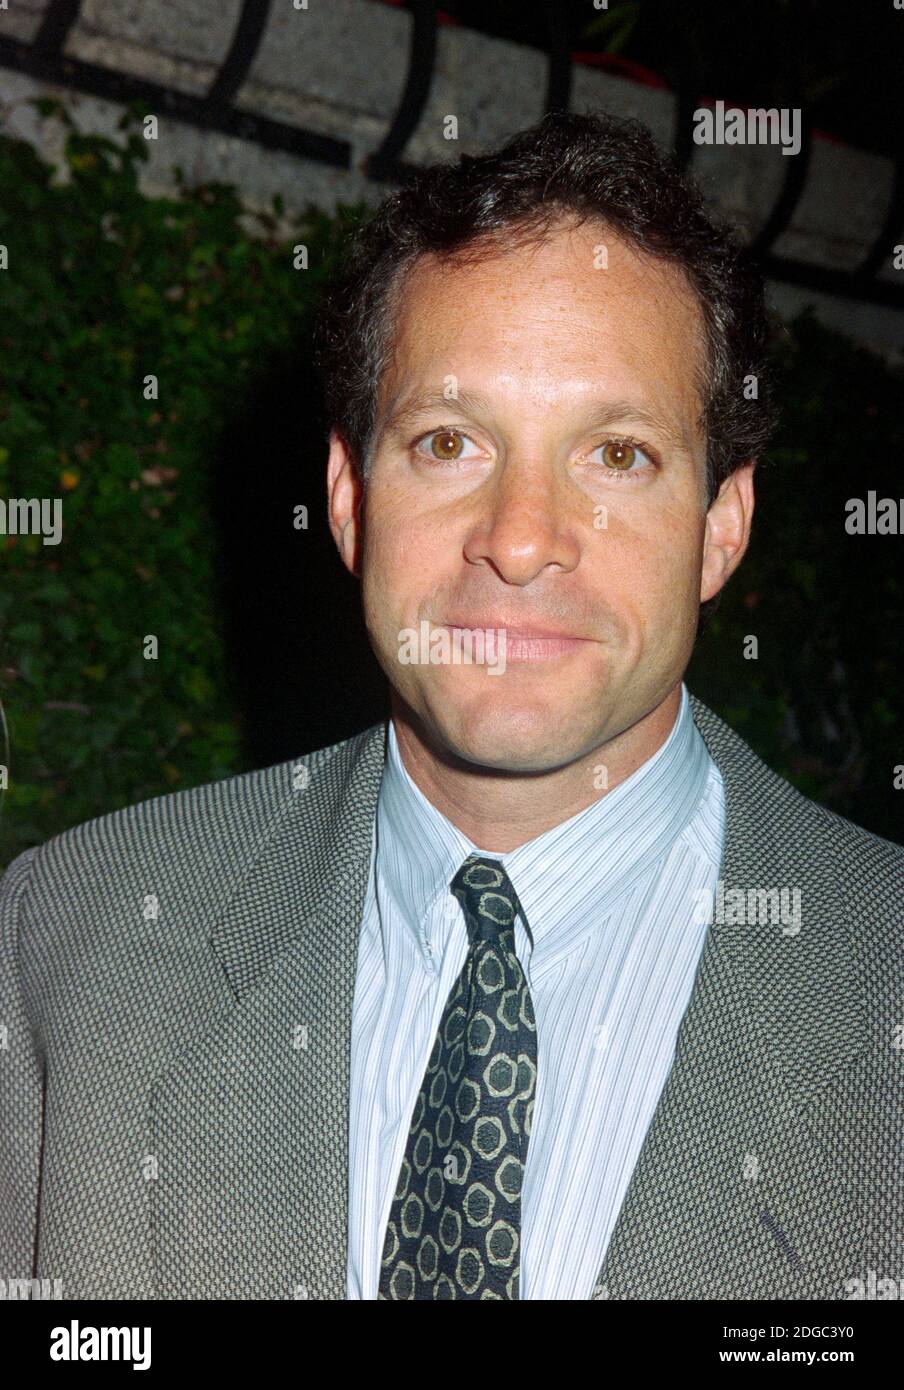 ARCHIVIO: LOS ANGELES, CA. 19 ottobre 1995: Attore Steve Guttenberg all'apertura di 'Four Dogs and a Bone' alla Geffen Playhouse di Los Angeles. Foto del file © Paul Smith/Caratteristiche Foto Stock